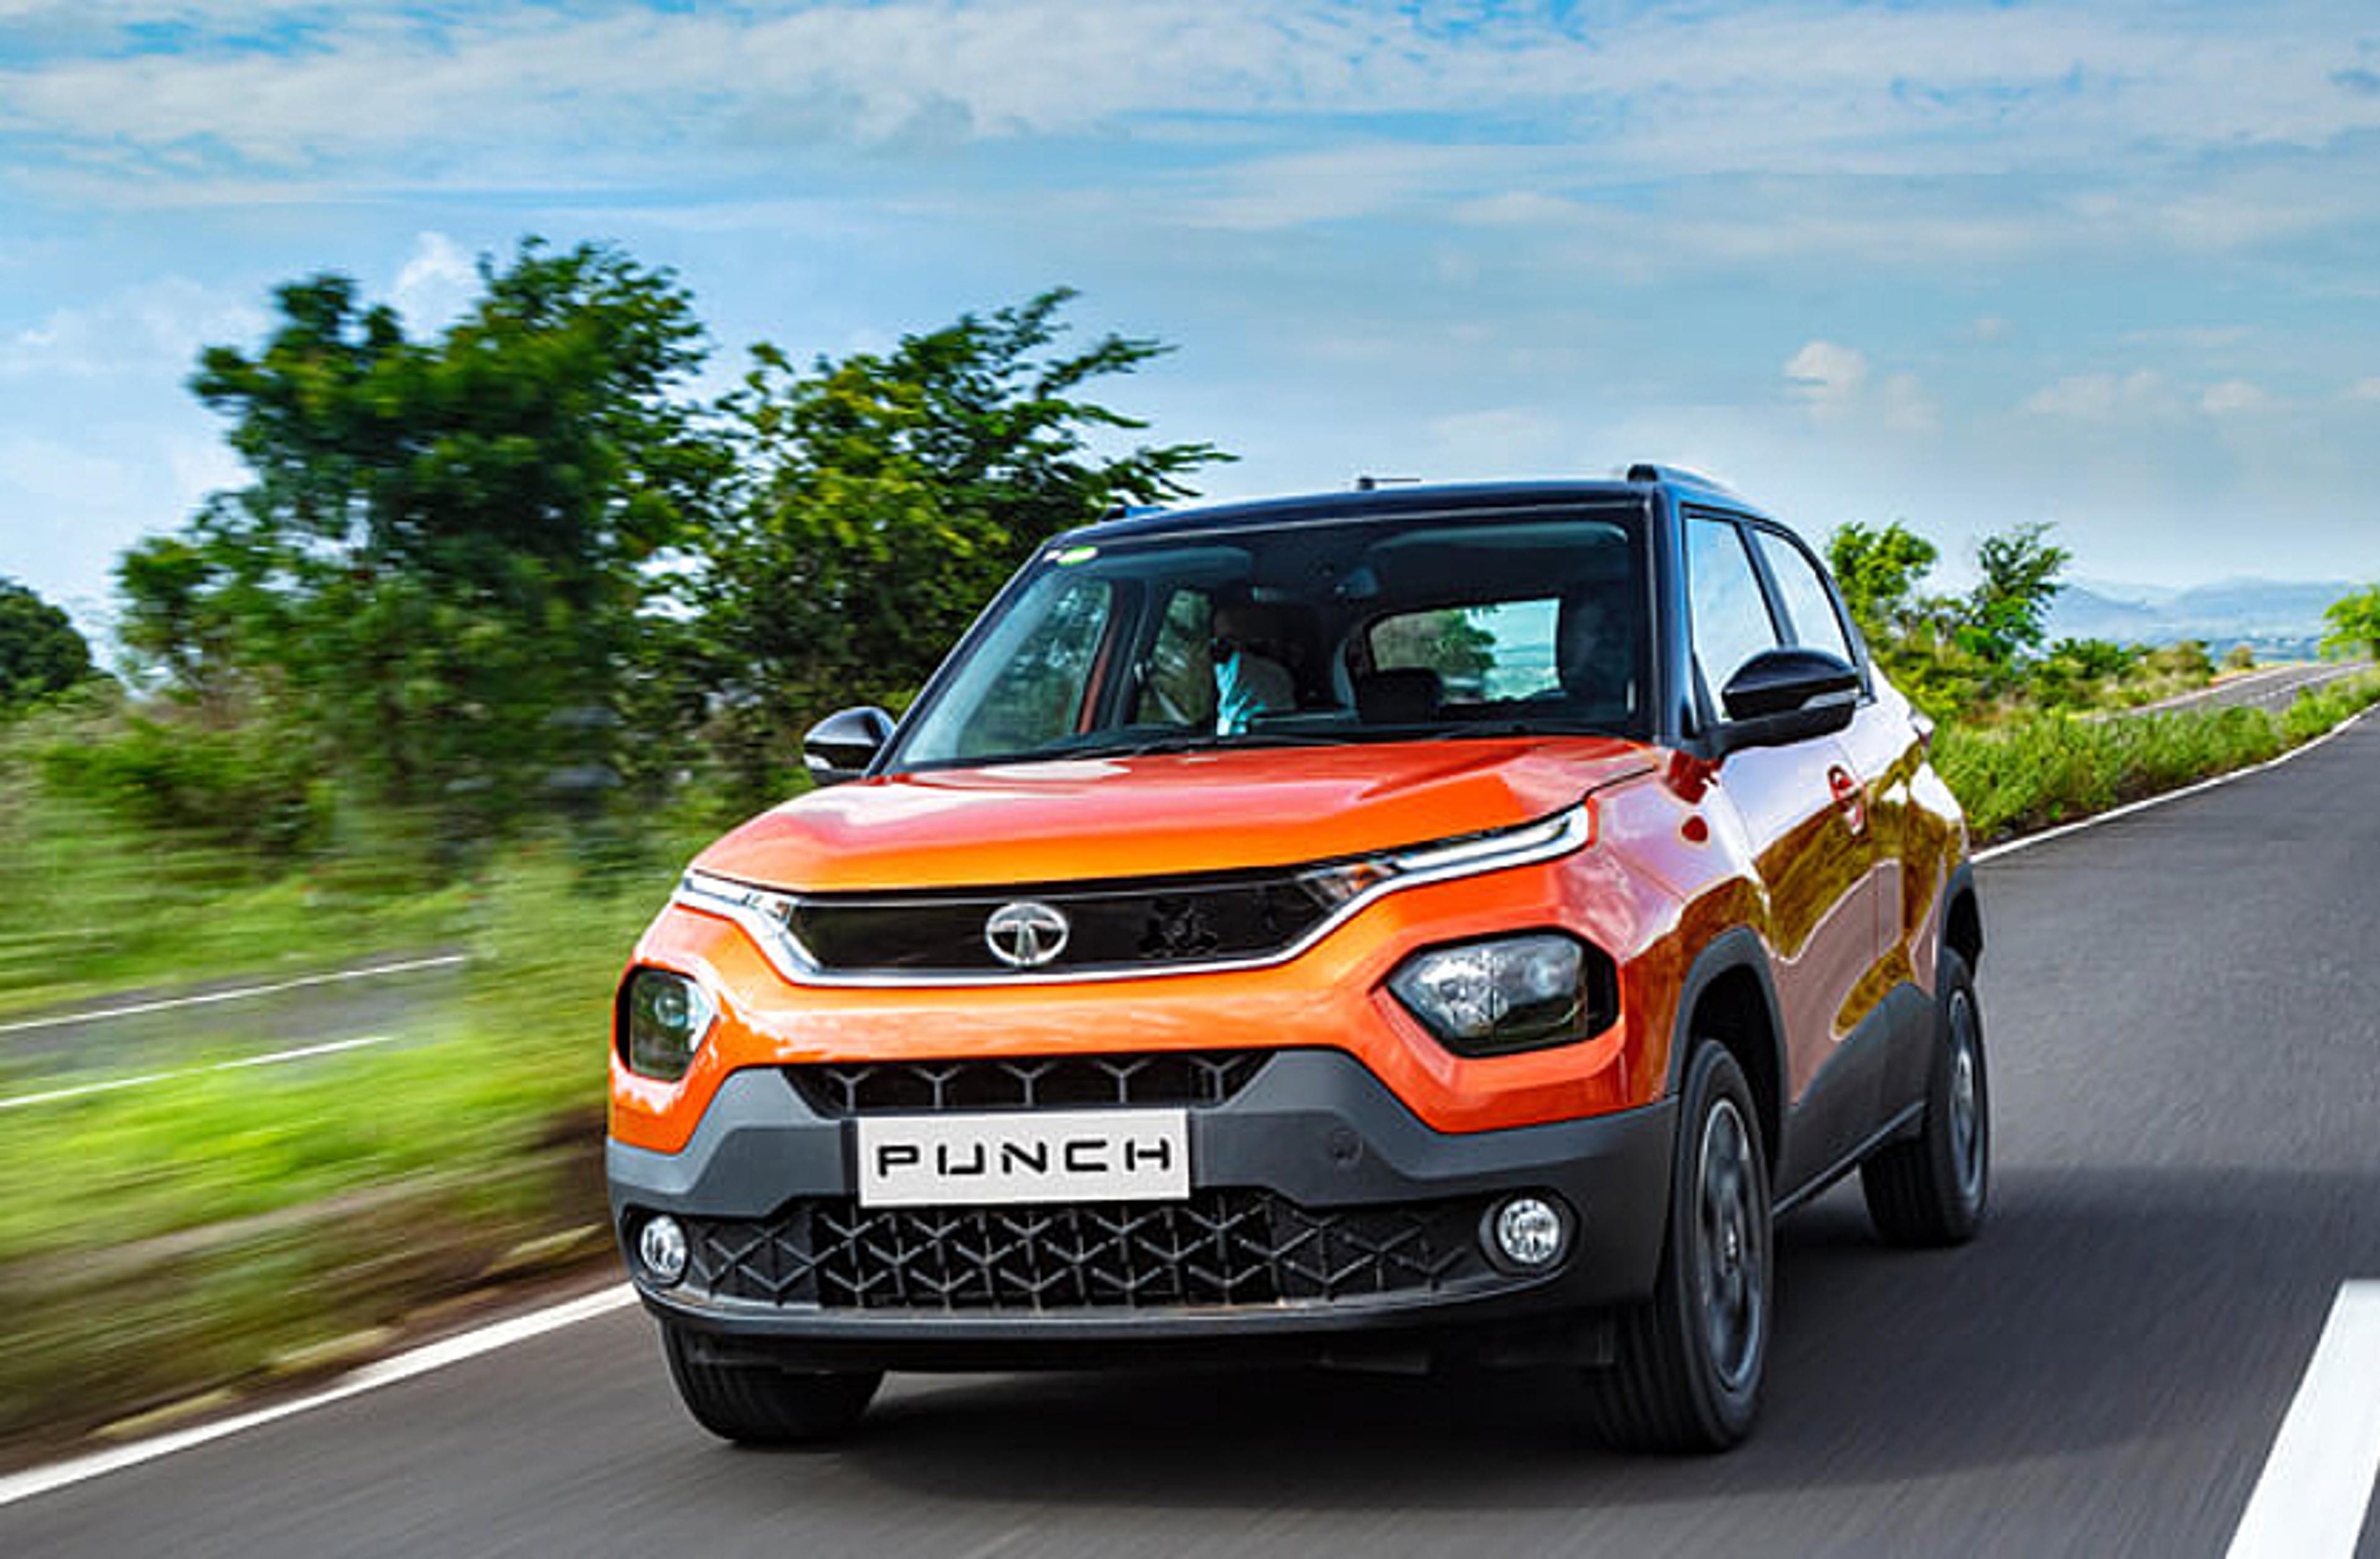 यहां बेहद कम दाम में मिल रही है नई Tata Punch, कीमत में पूरे 1 लाख रुपये की
कटौती